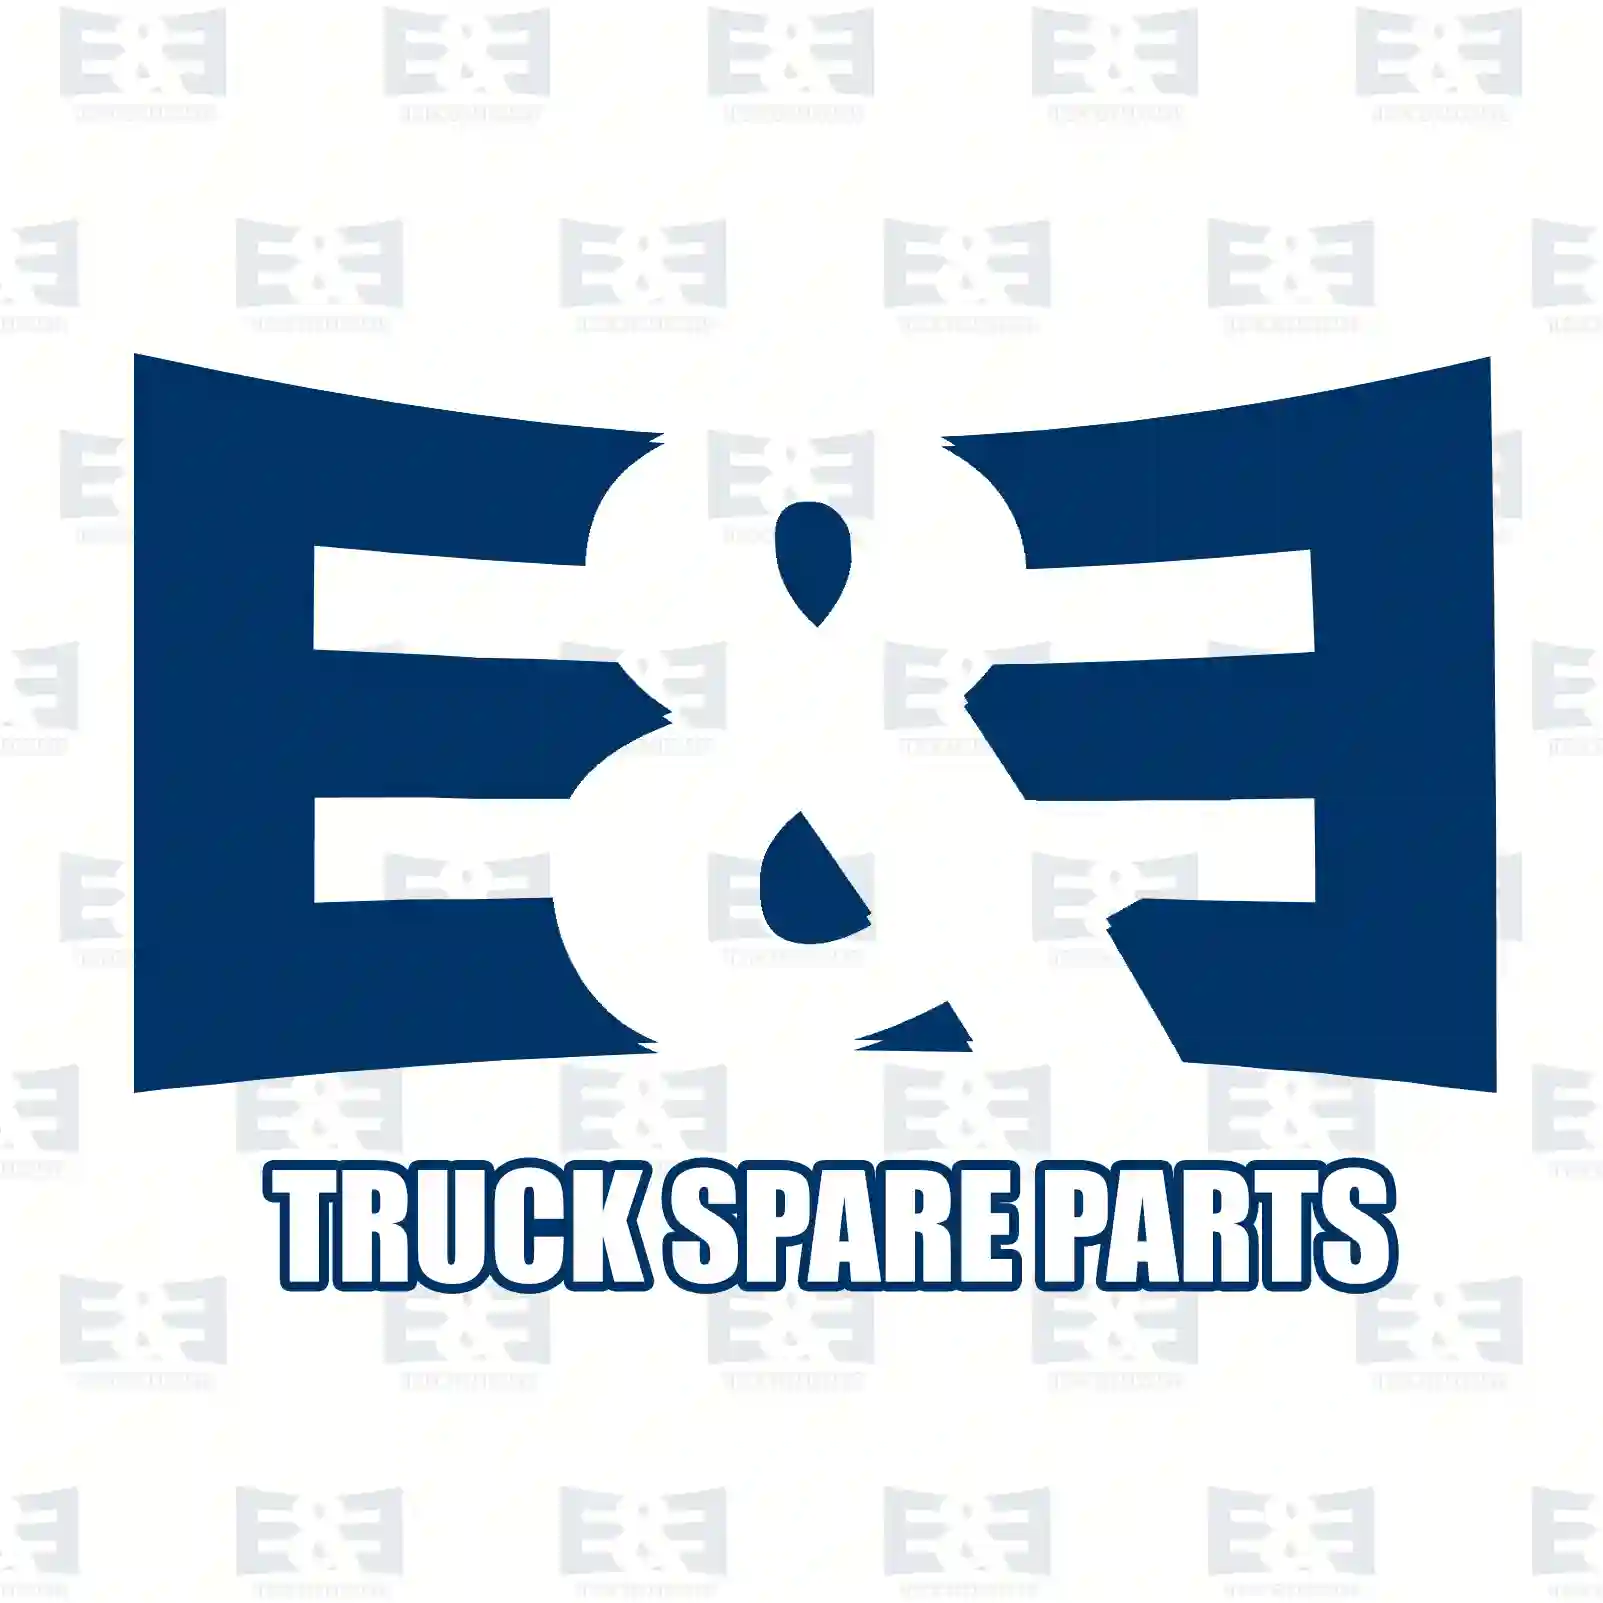  Contact bridge || E&E Truck Spare Parts | Truck Spare Parts, Auotomotive Spare Parts